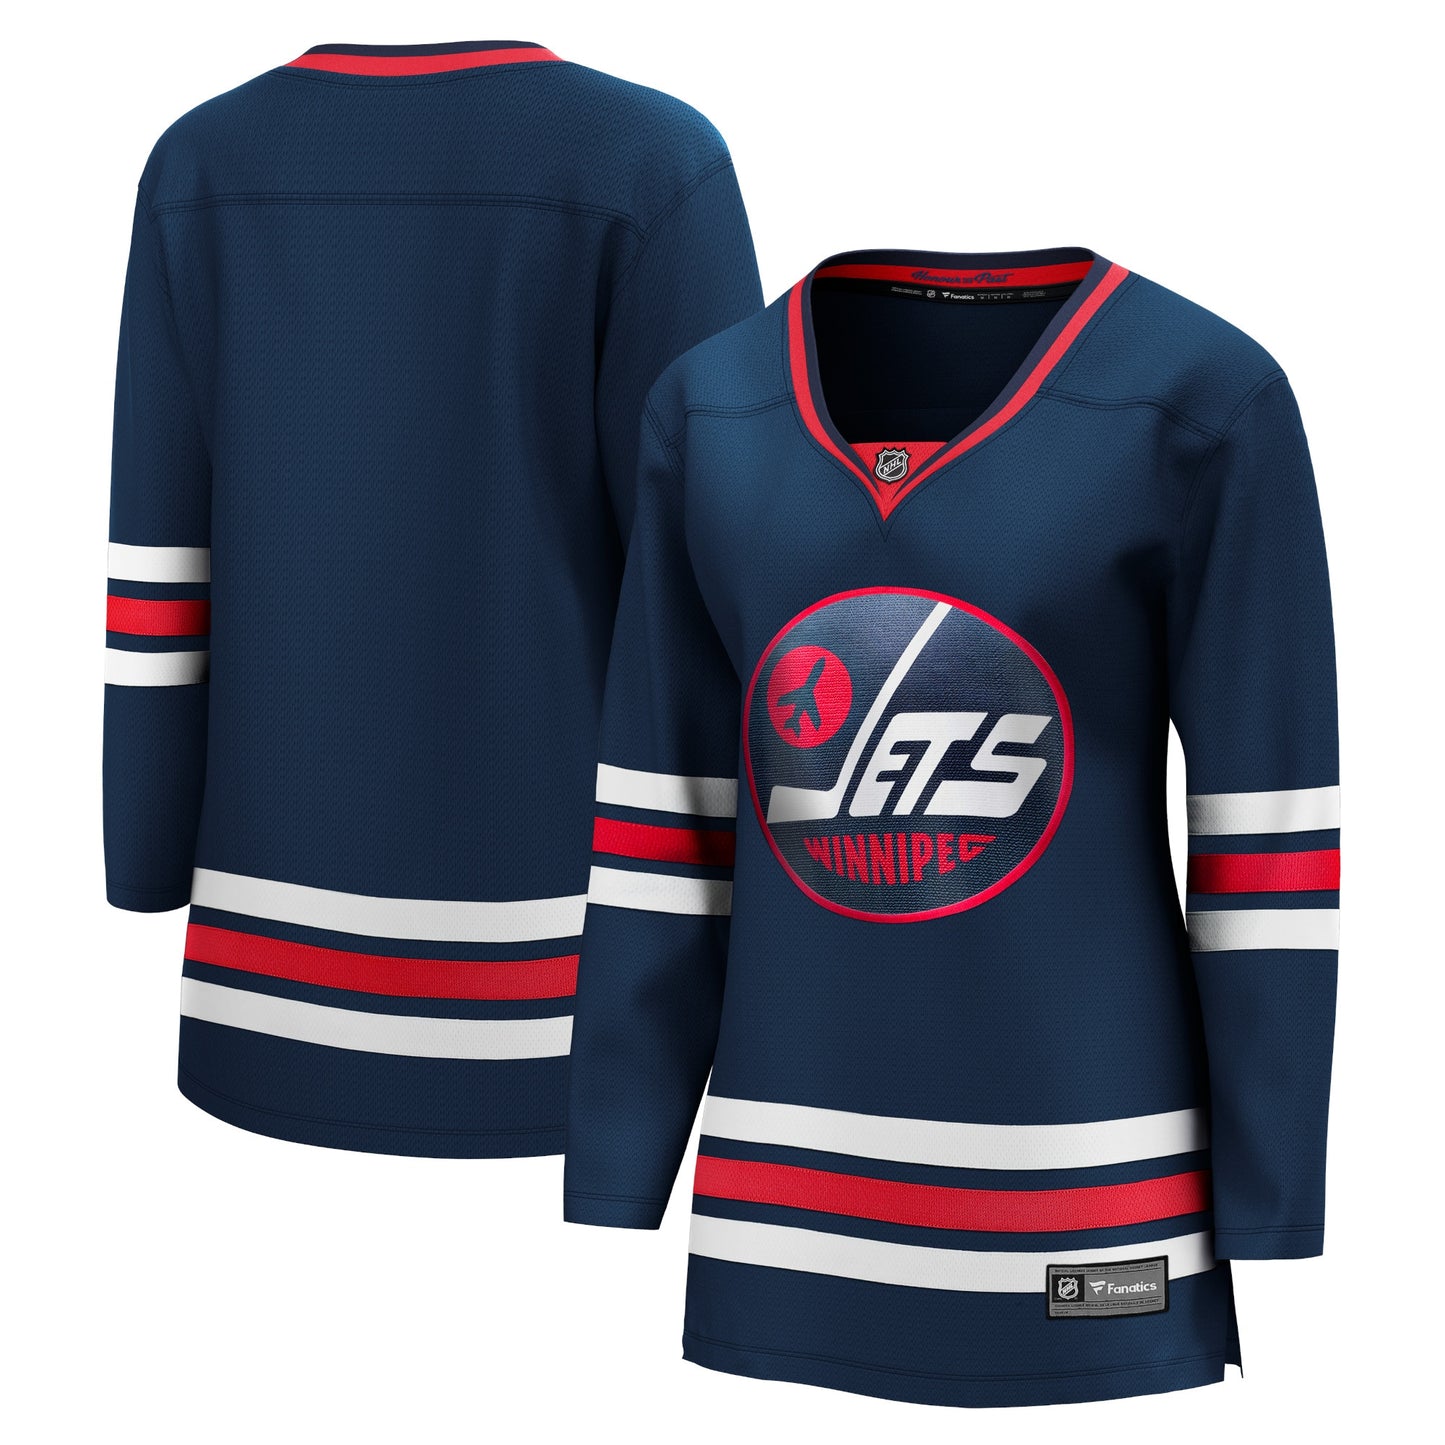 Winnipeg Jets Fanatics Branded Women's 2021/22 Alternate Premier Breakaway Player Jersey - Navy